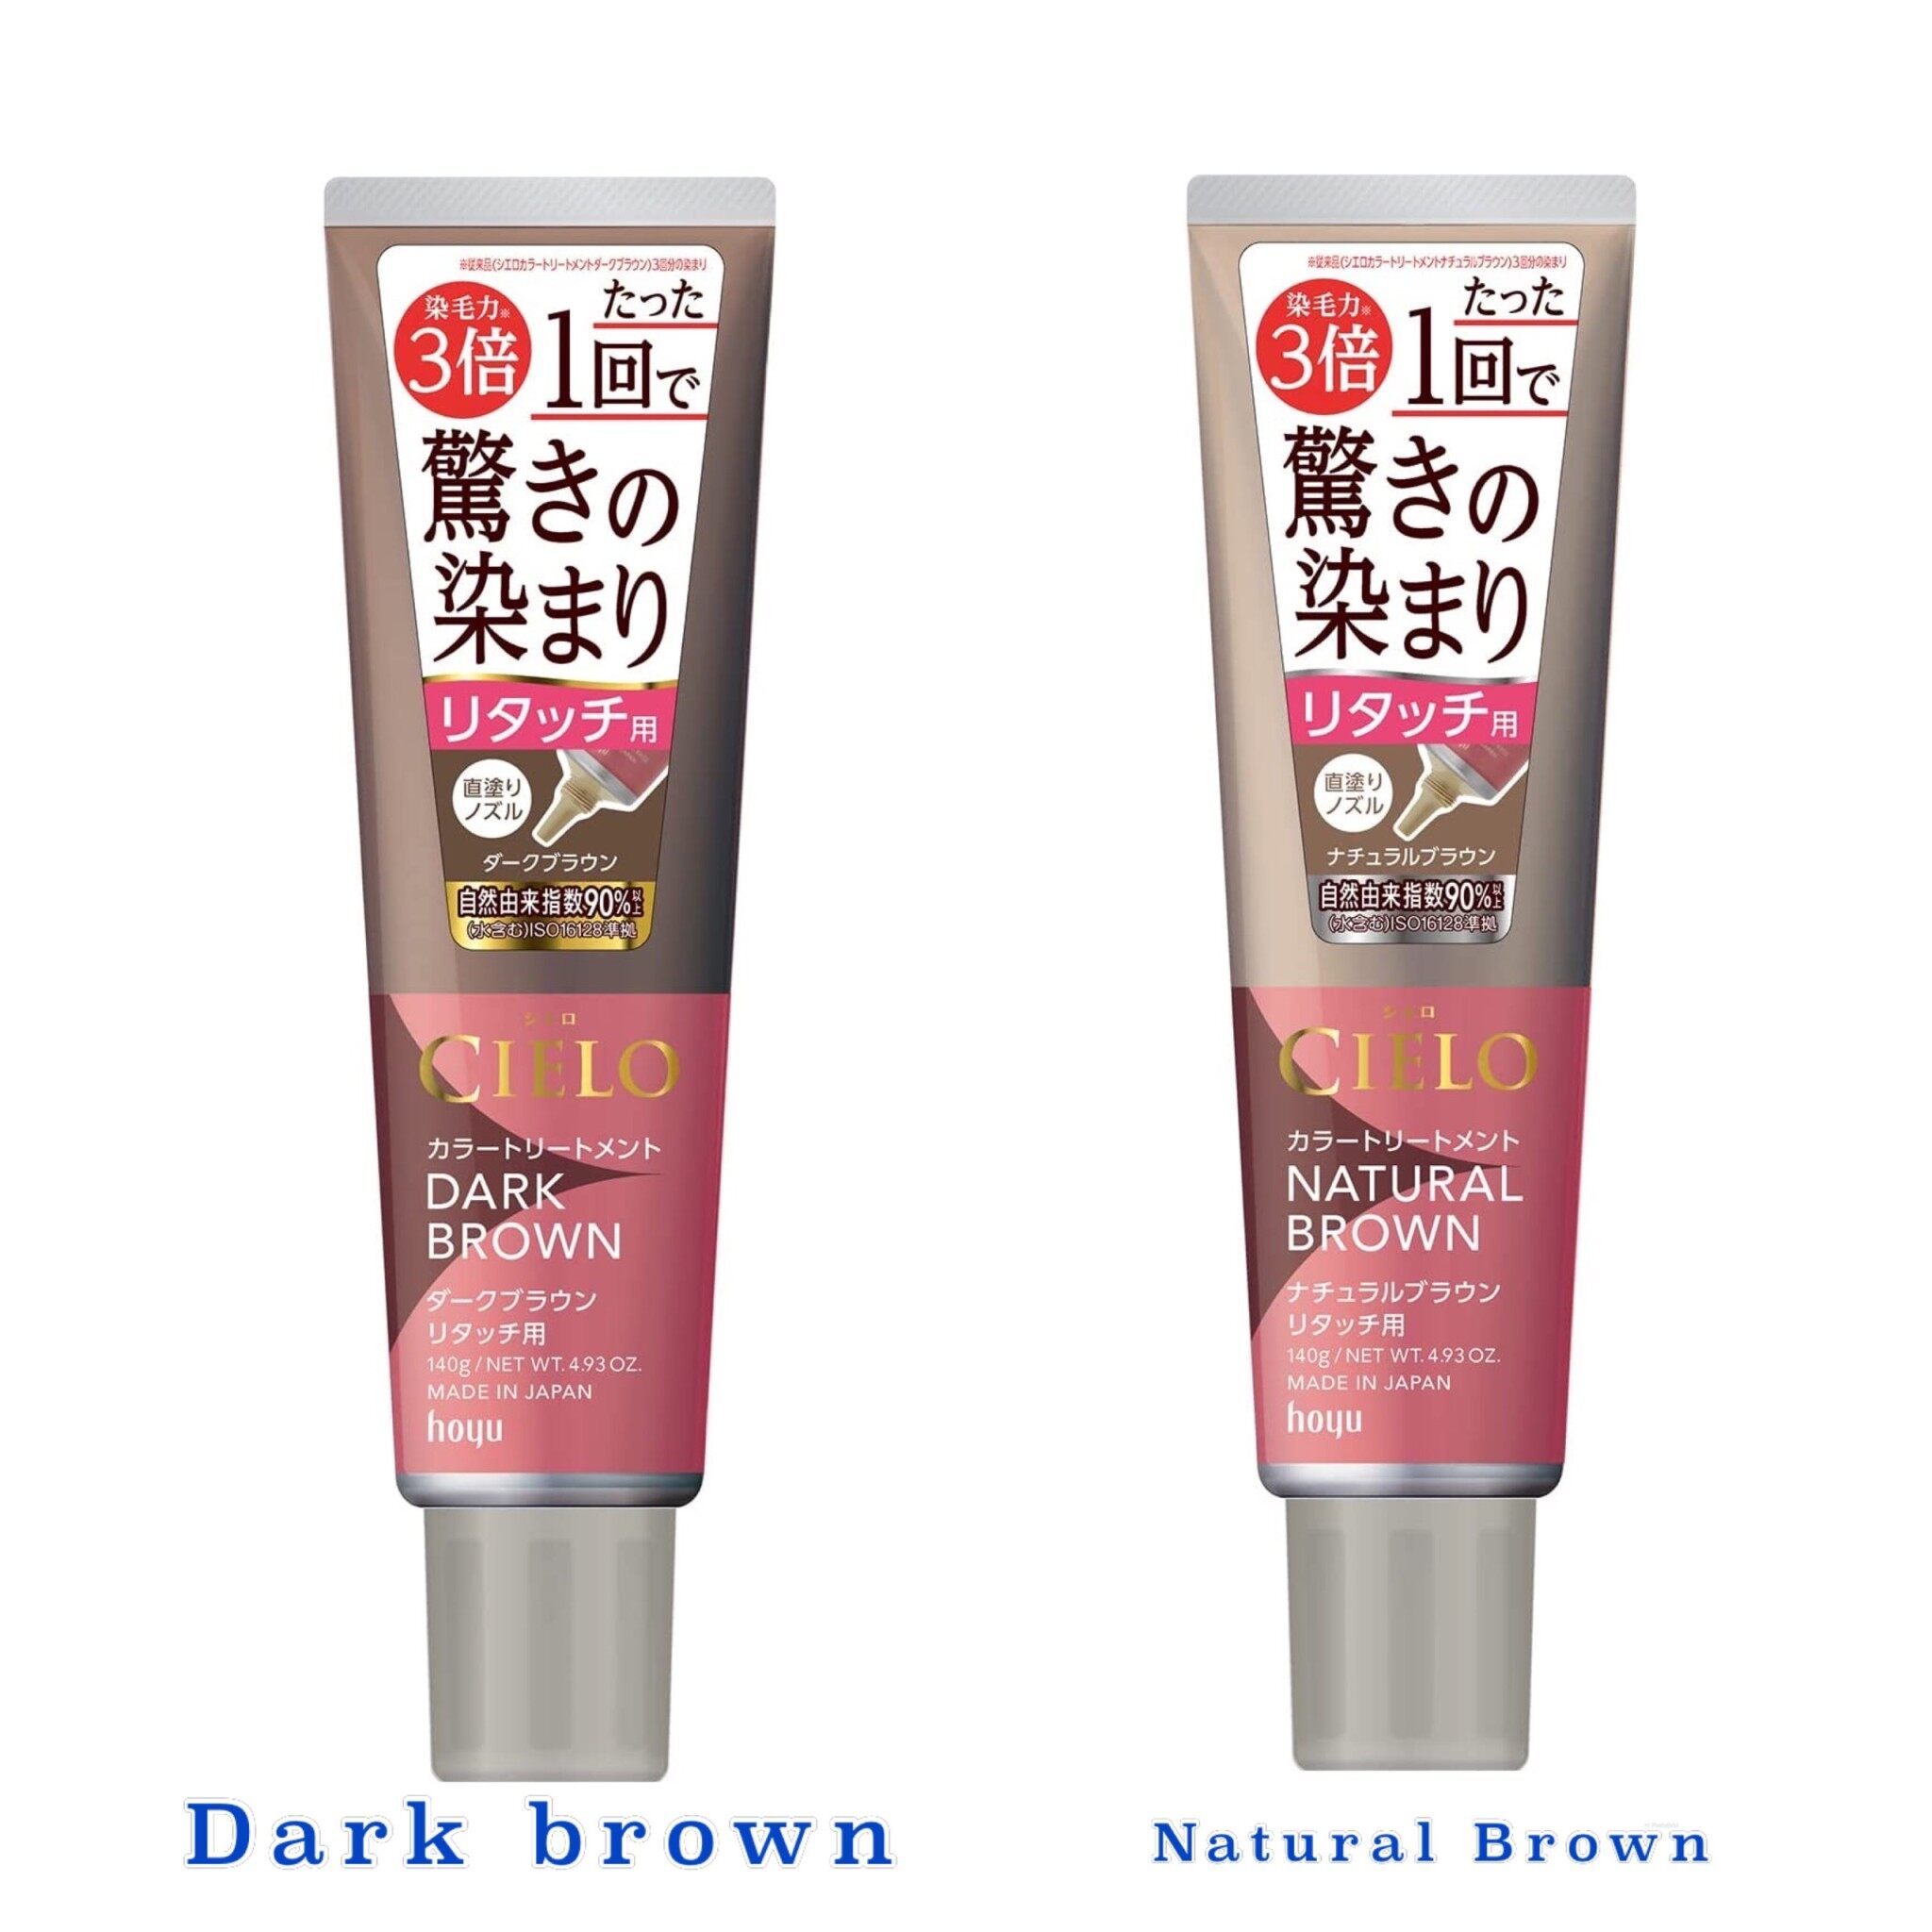 สี Dark Brown ราคาถูก ซื้อออนไลน์ที่ - ก.ค. 2023 | Lazada.Co.Th